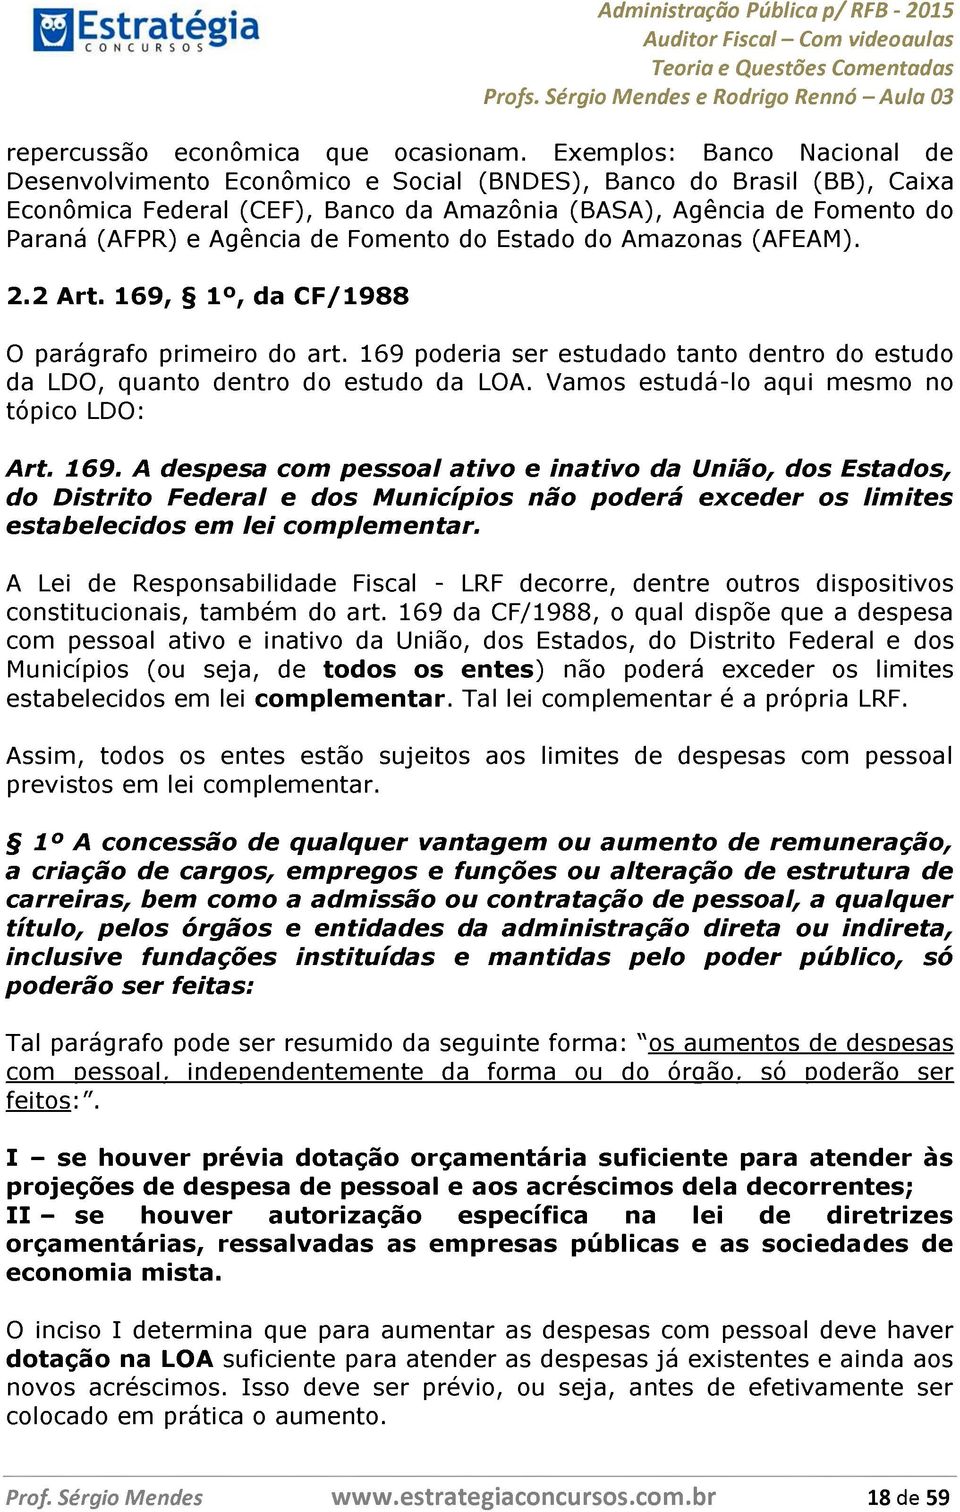 Fomento do Estado do Amazonas (AFEAM). 2.2 Art. 169, 1, da CF/1988 O parágrafo primeiro do art. 169 poderia ser estudado tanto dentro do estudo da LDO, quanto dentro do estudo da LOA.